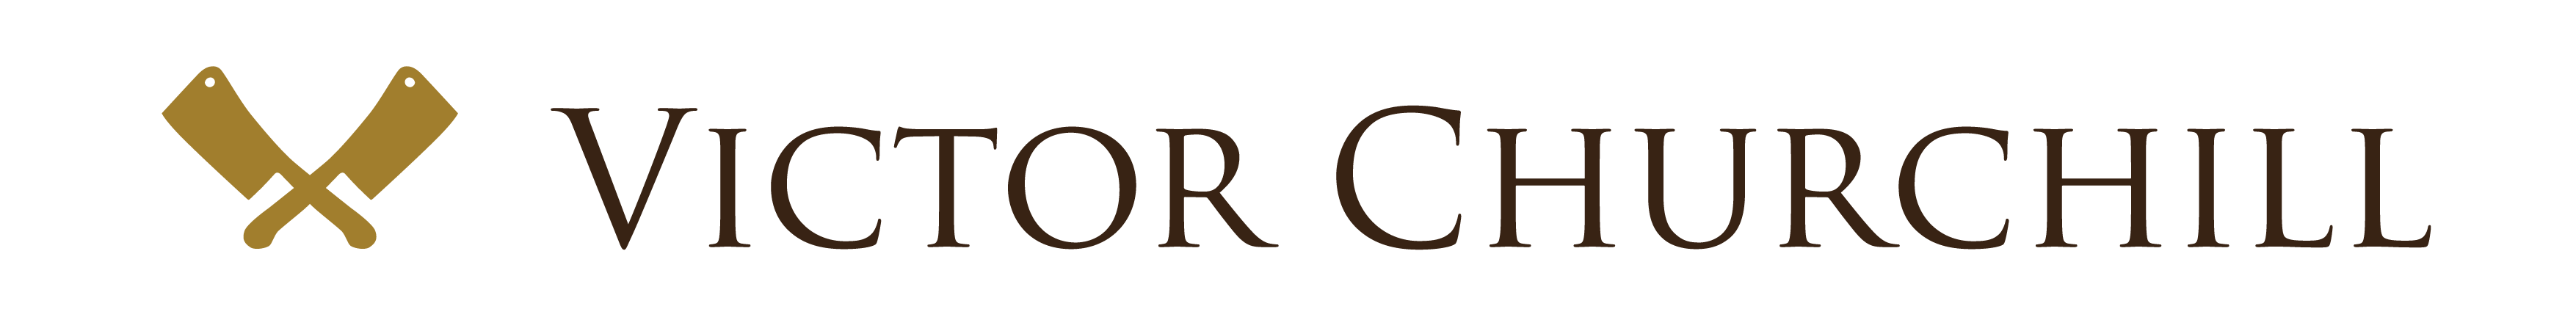 Victor Churchill Support  logo